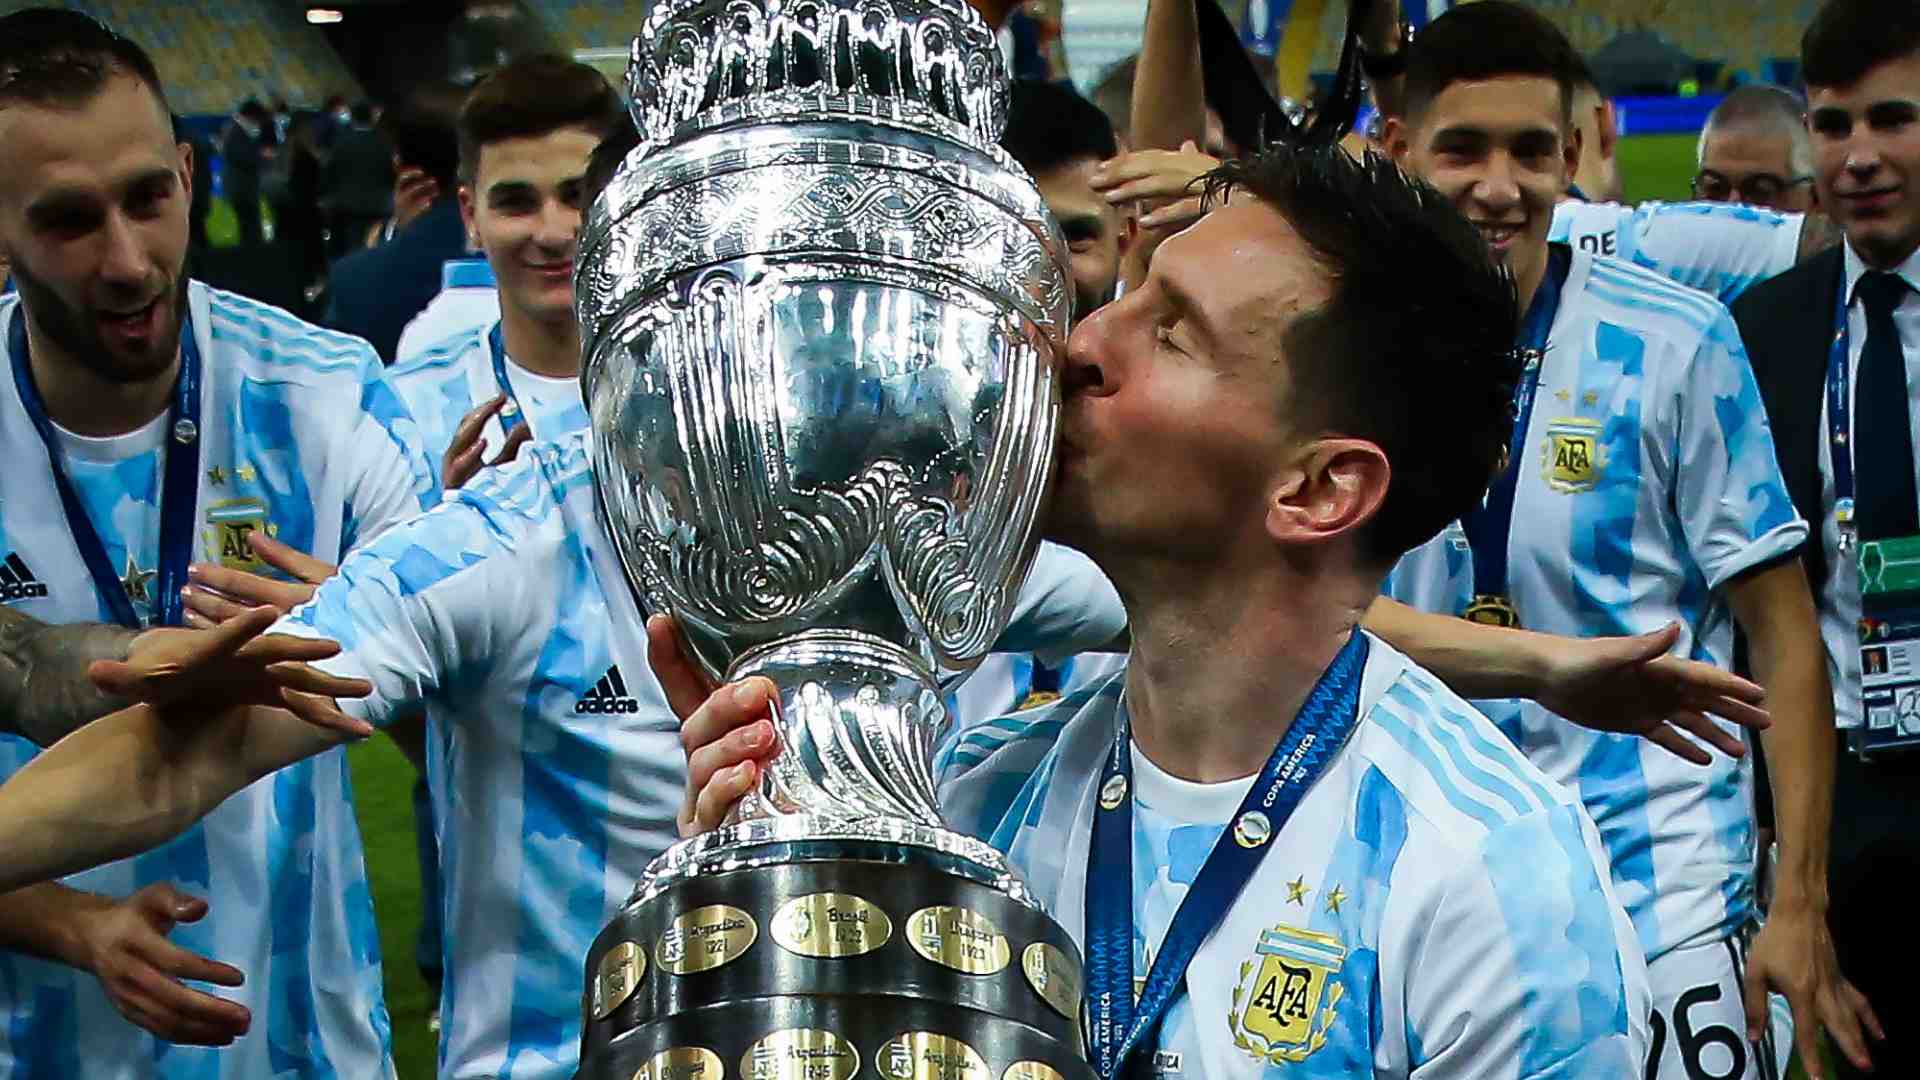 Đã từng chứng kiến Argentina giành chiến thắng tại Copa America, liệu bạn đã thấy đầy cảm xúc của các cầu thủ trong khoảnh khắc chiến thắng đó chưa? Để cảm nhận tất cả những gì diễn ra trong trận đấu đó, hãy cùng xem các hình ảnh liên quan đến trận chiến đó.